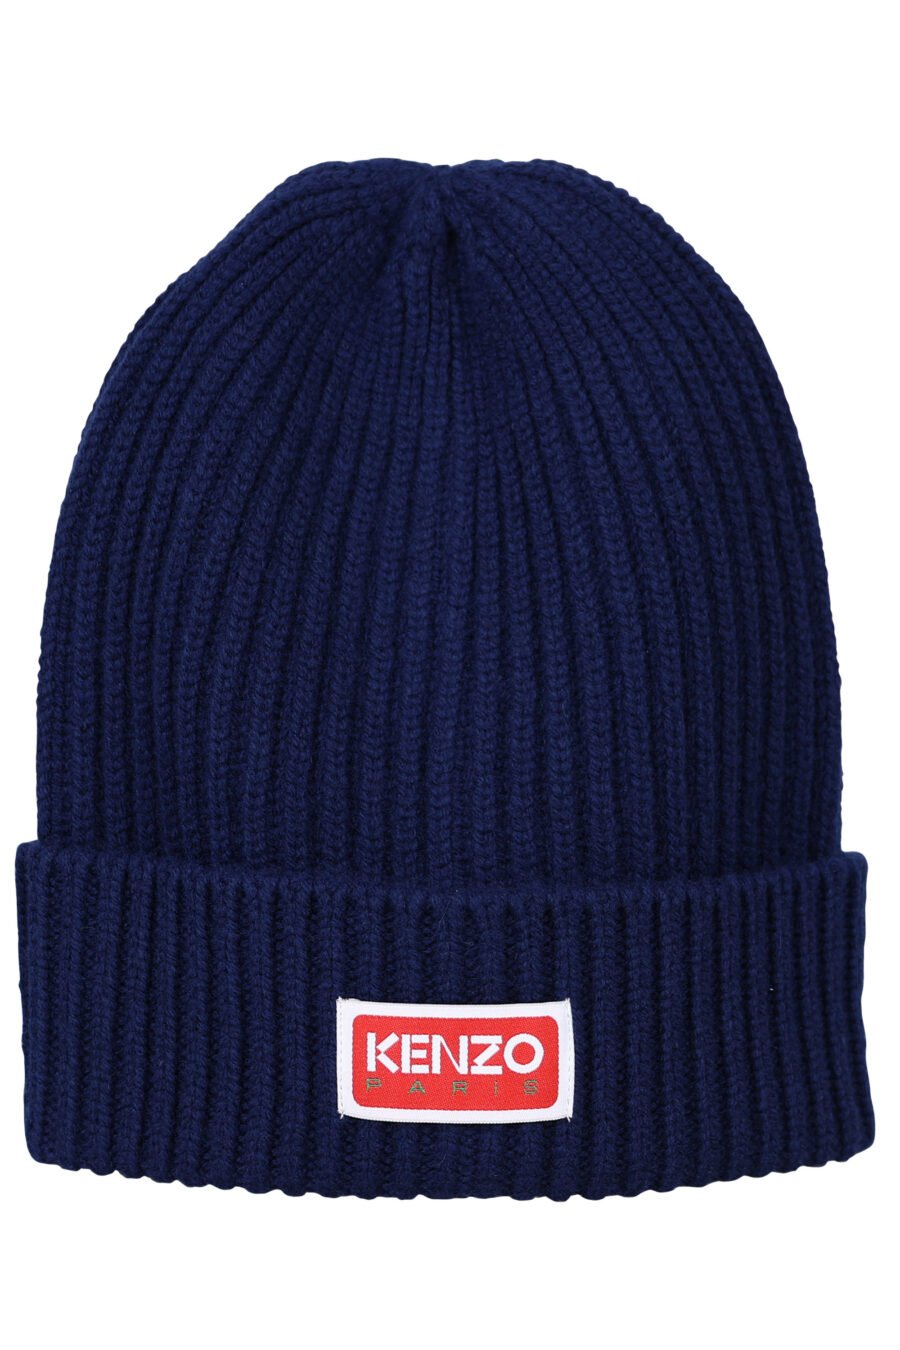 Casquette bleu foncé avec logo "kenzo paris" - 3612230524859